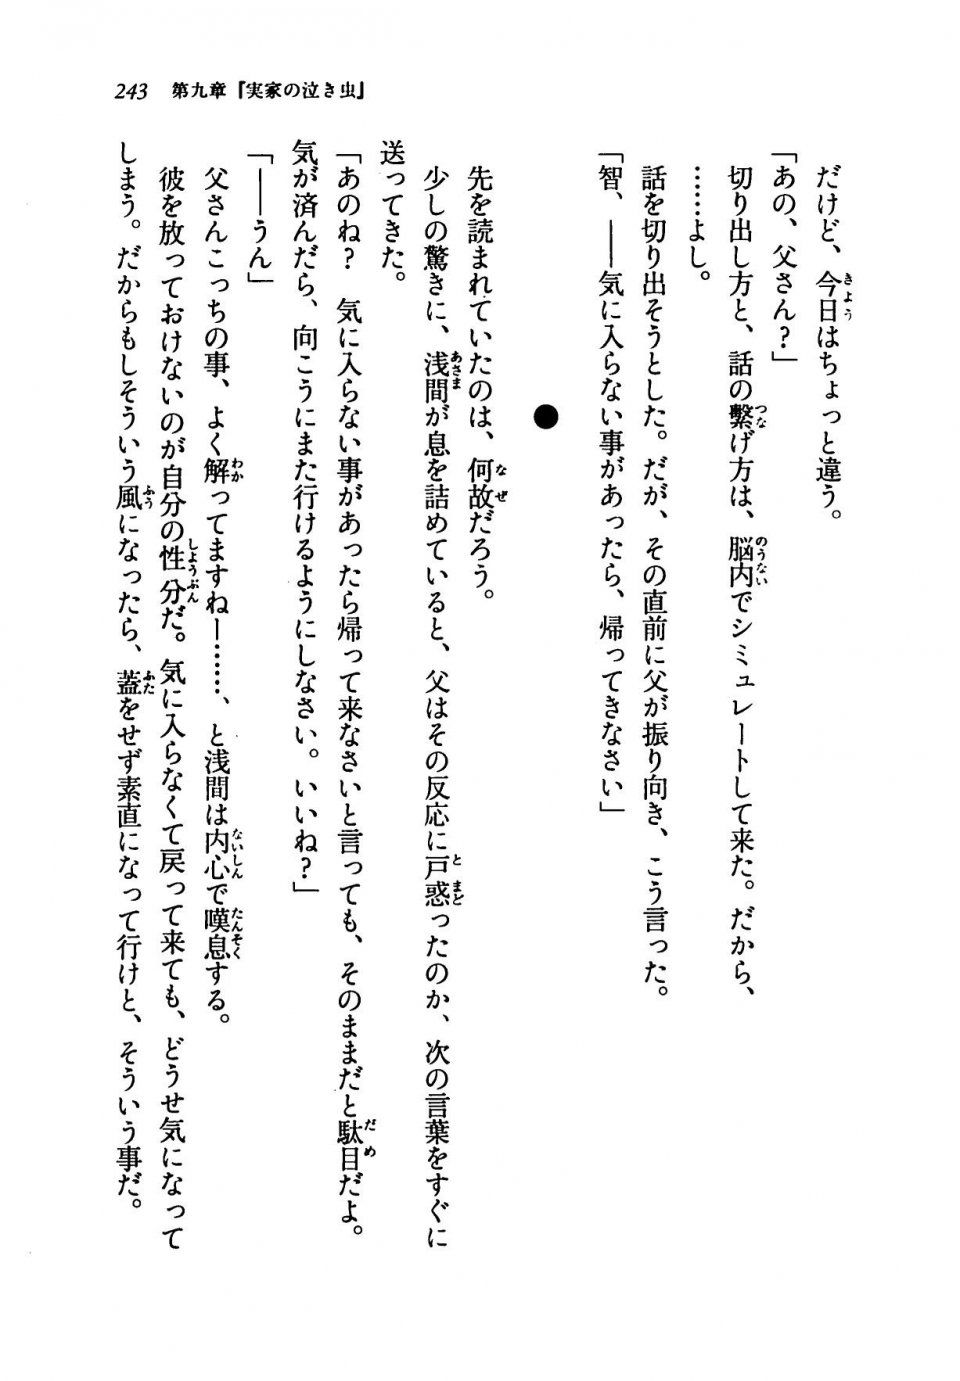 Kyoukai Senjou no Horizon LN Vol 19(8A) - Photo #243